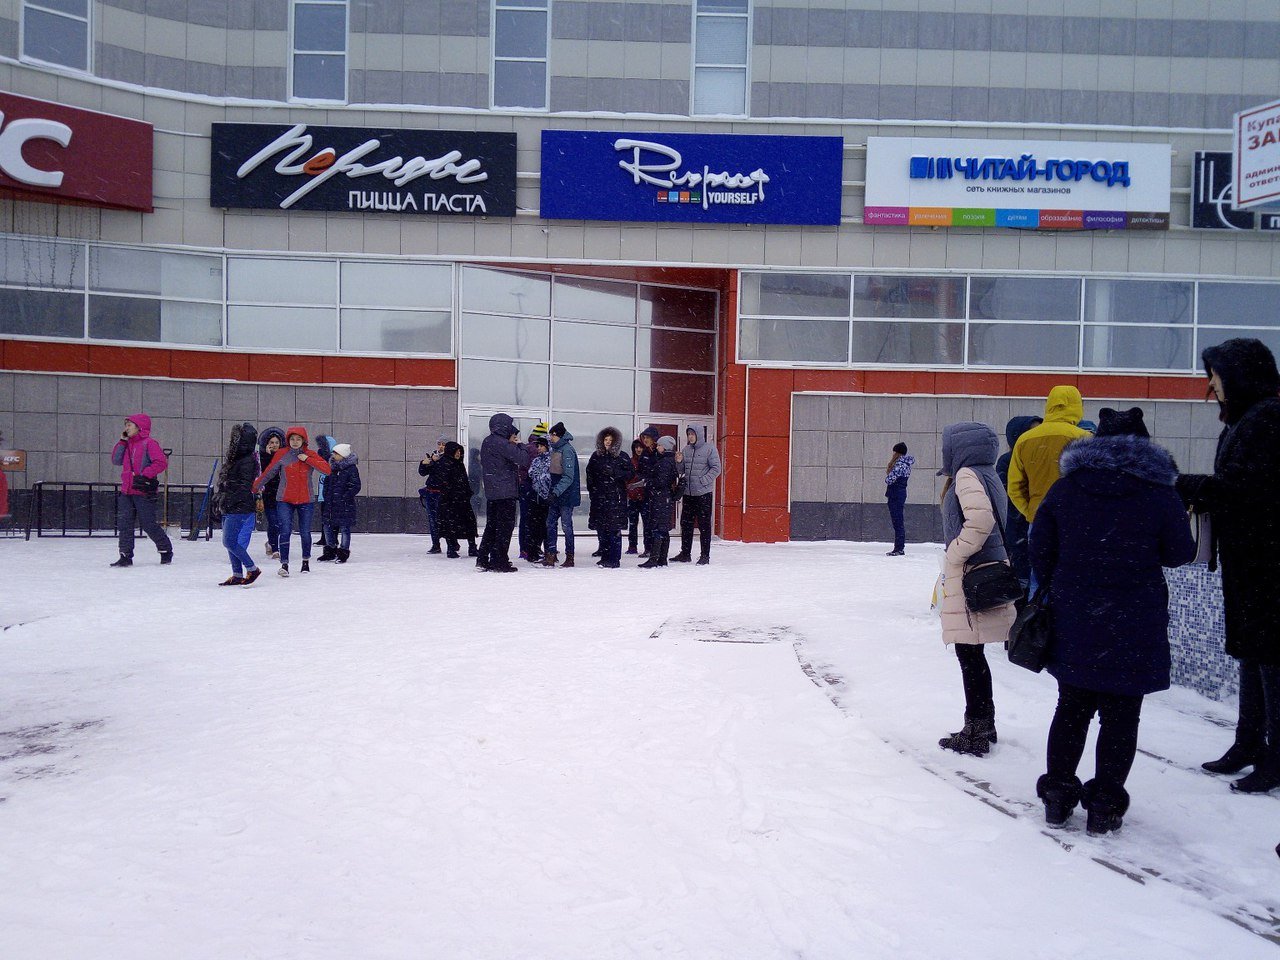 Барнаульский ТРЦ "Огни" эвакуирован после сообщения о взрывном устройстве